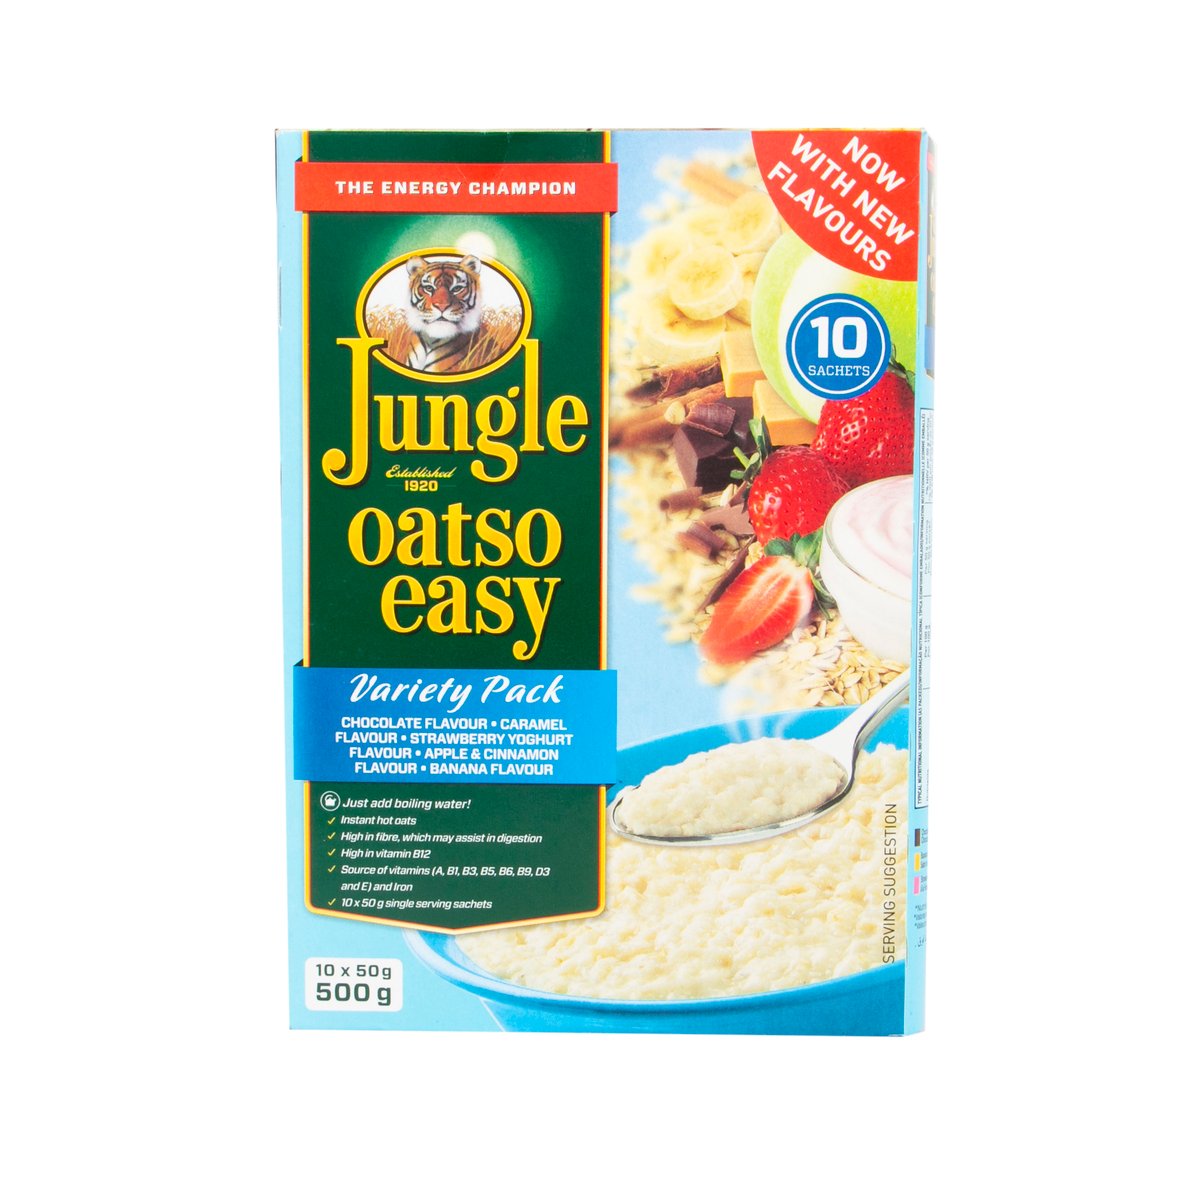 Jungle Oatso Easy Varity Pack 500 g